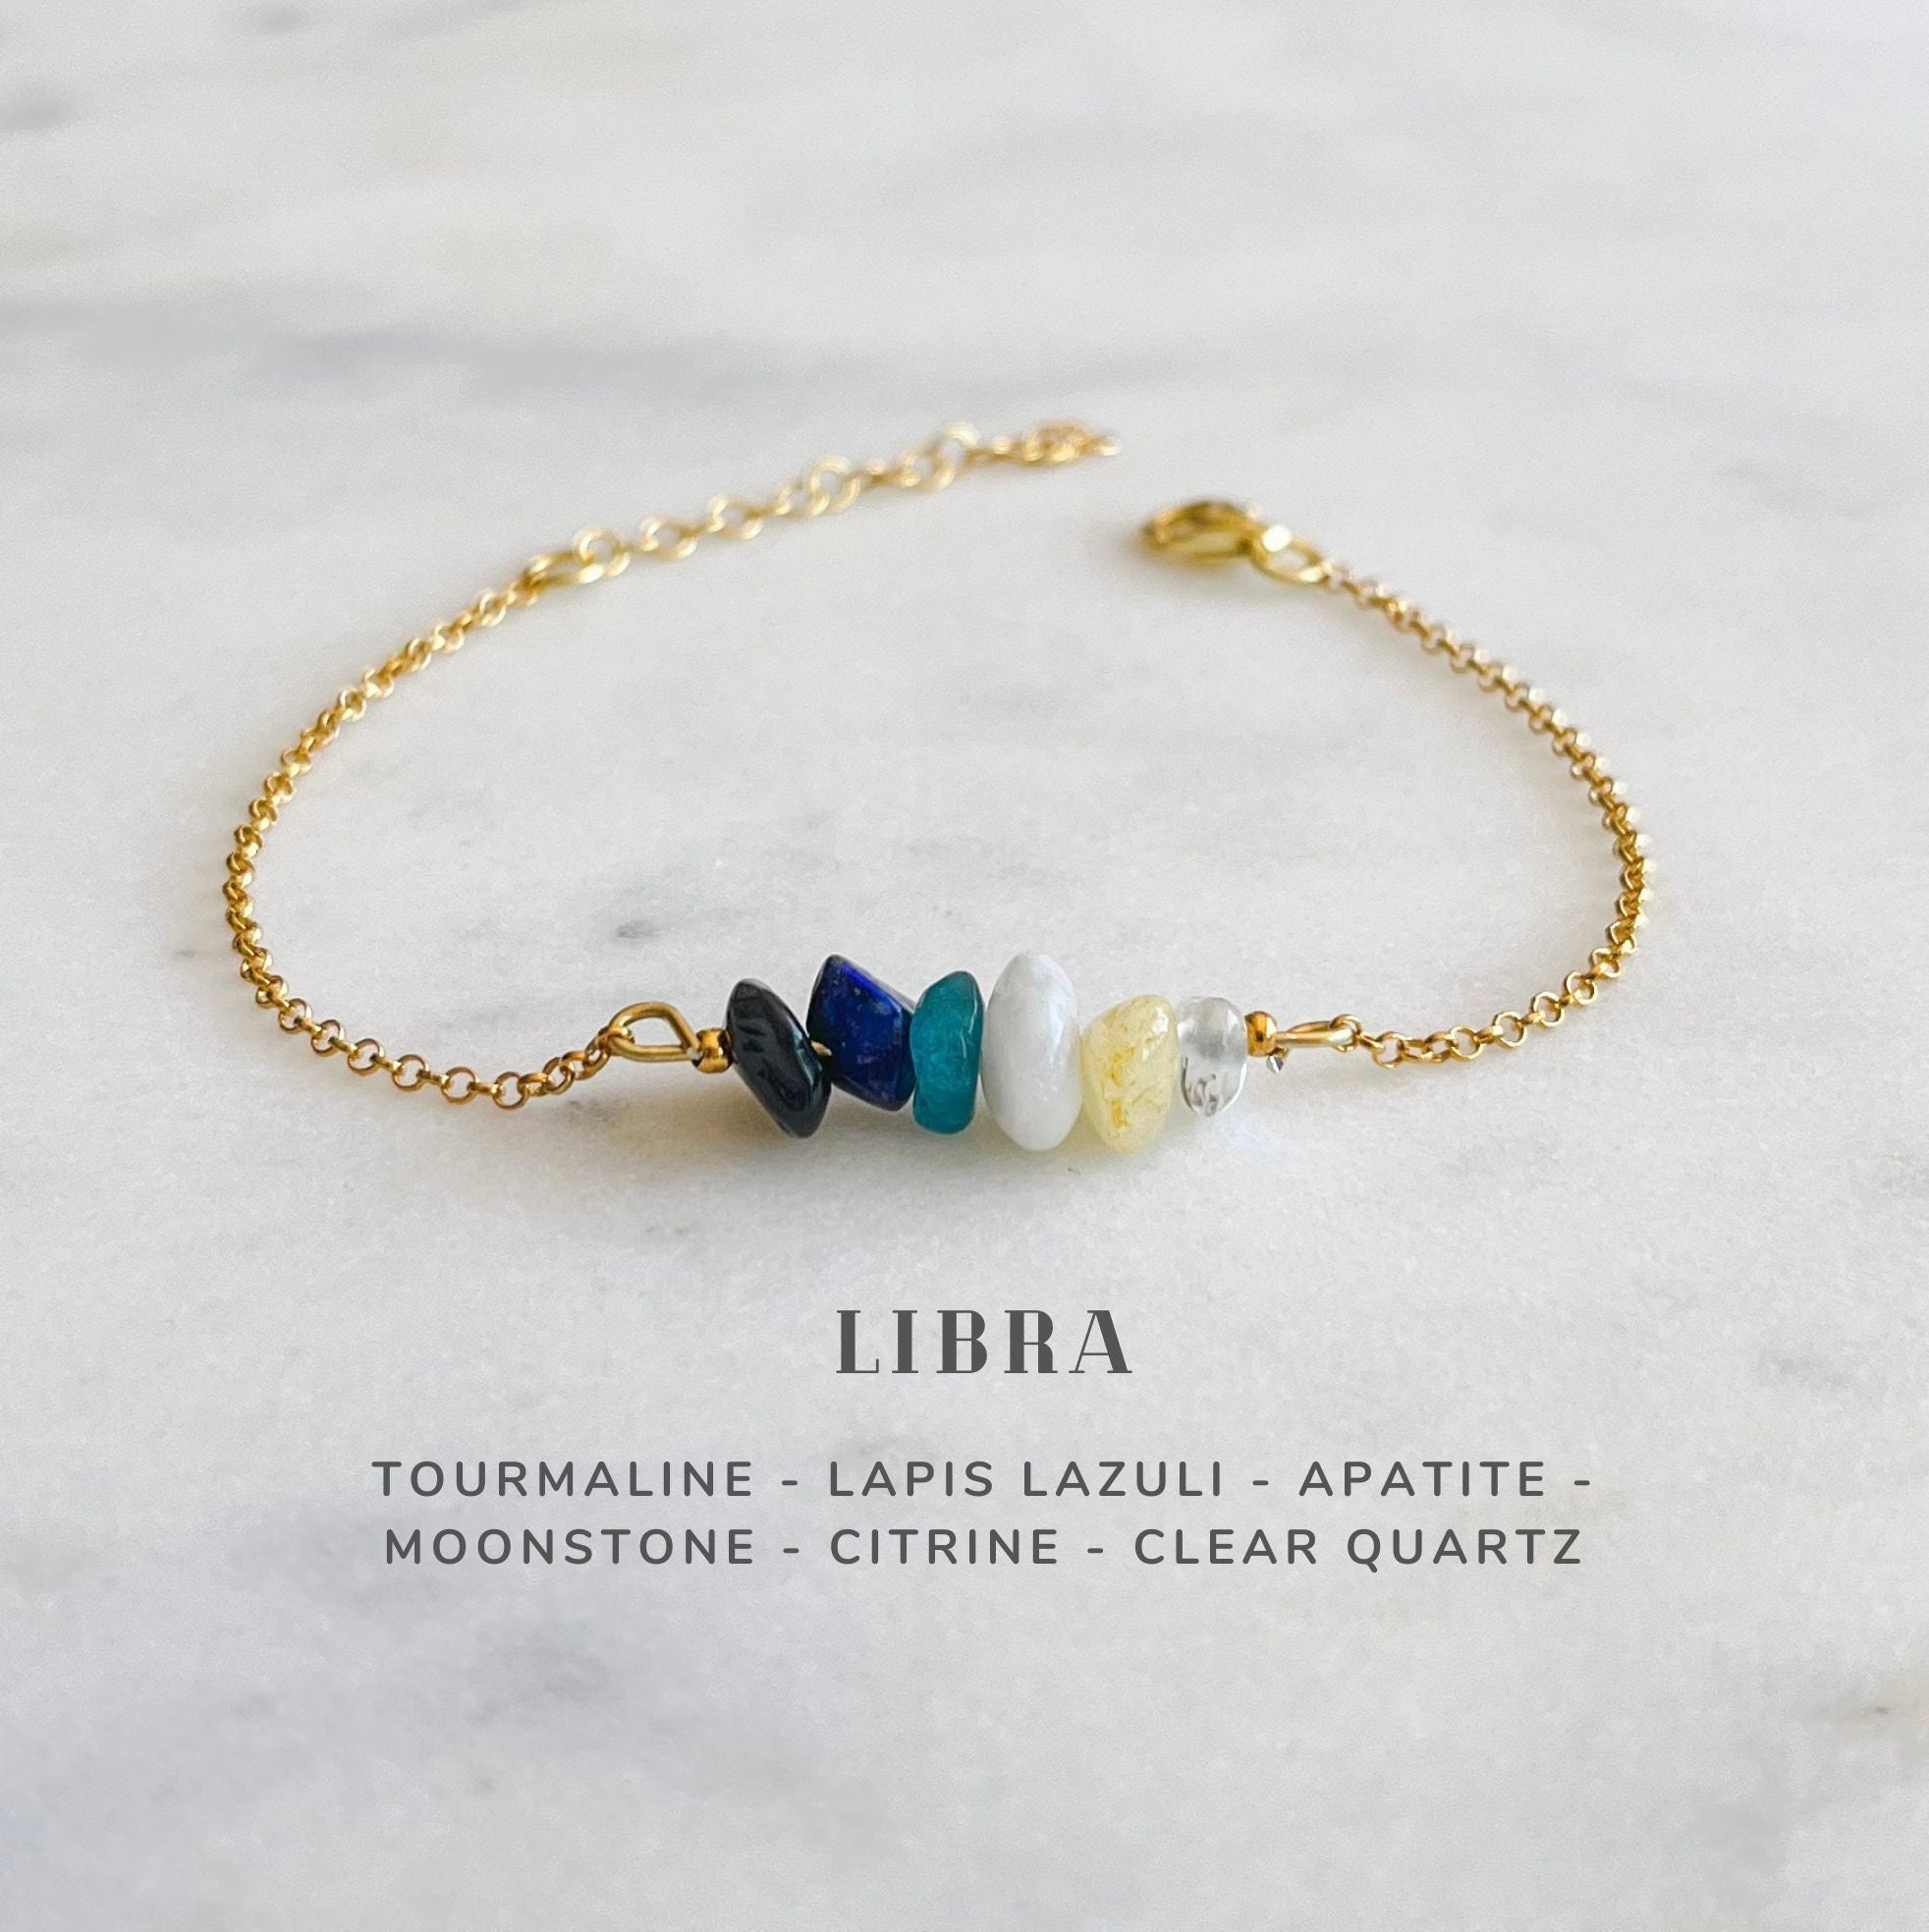 Buy Libra Bracelet Online In India  Etsy India